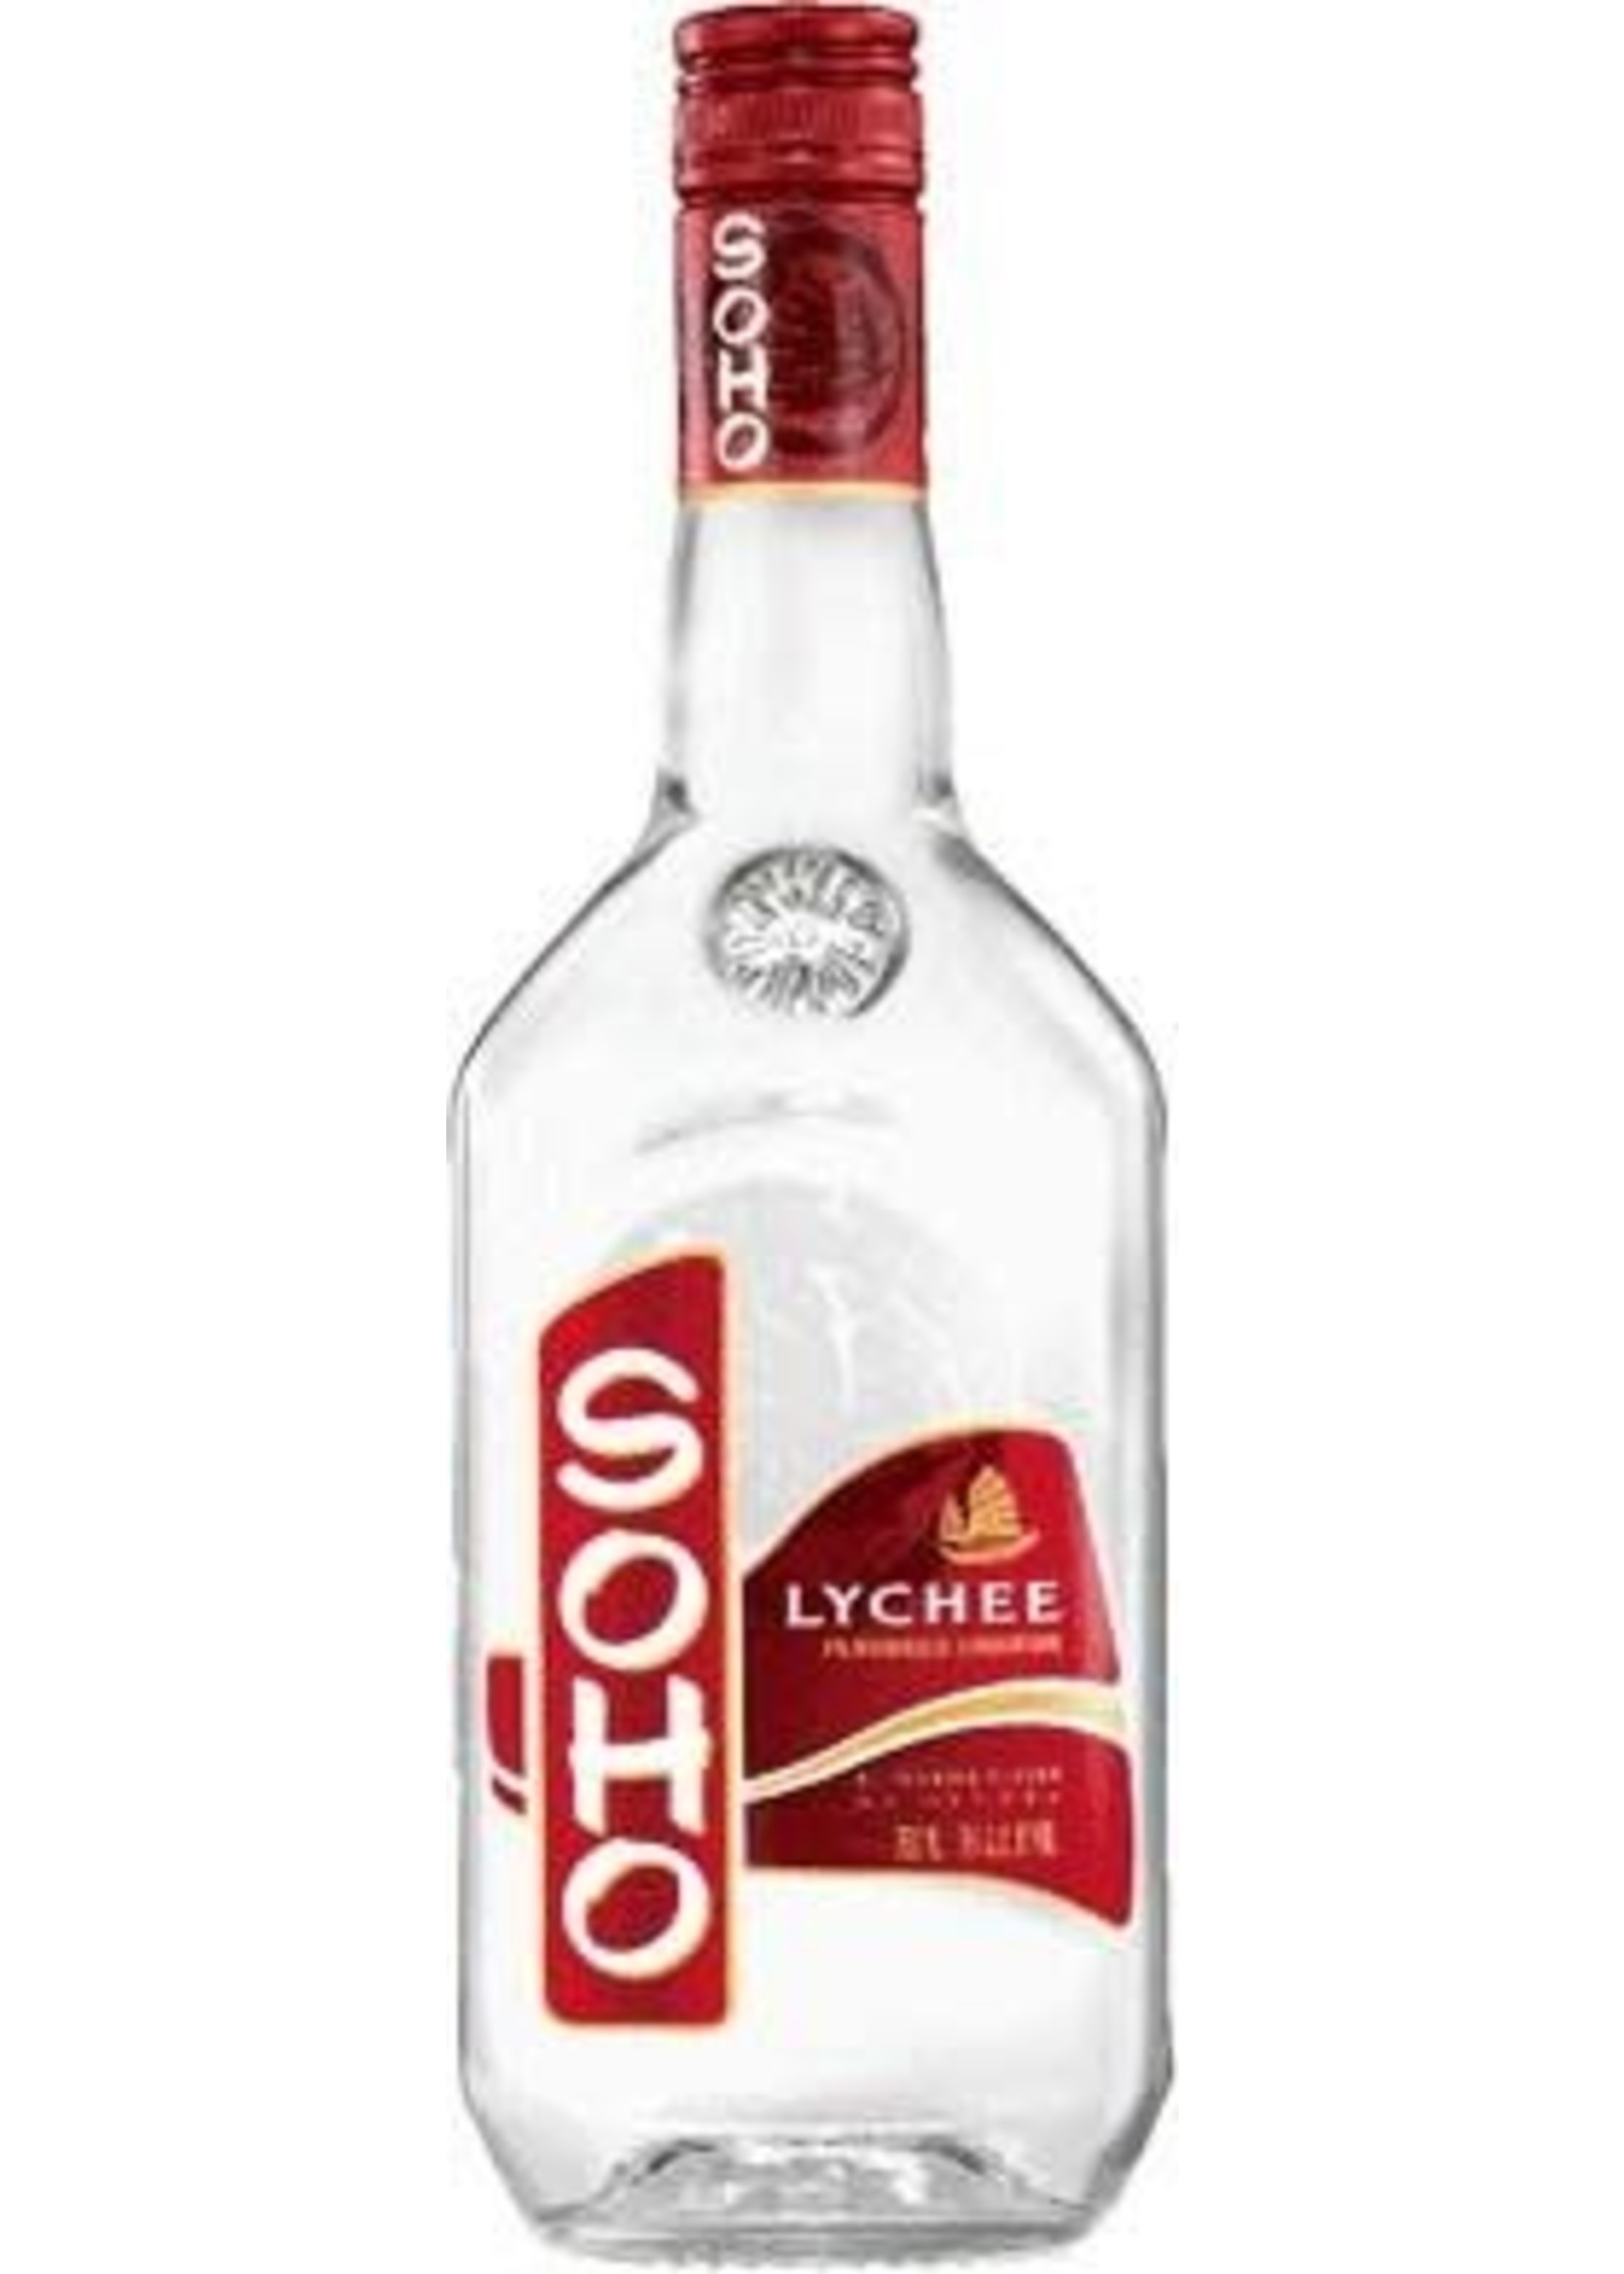 Soho Soho / Lychee Liqueur 42 / 750mL